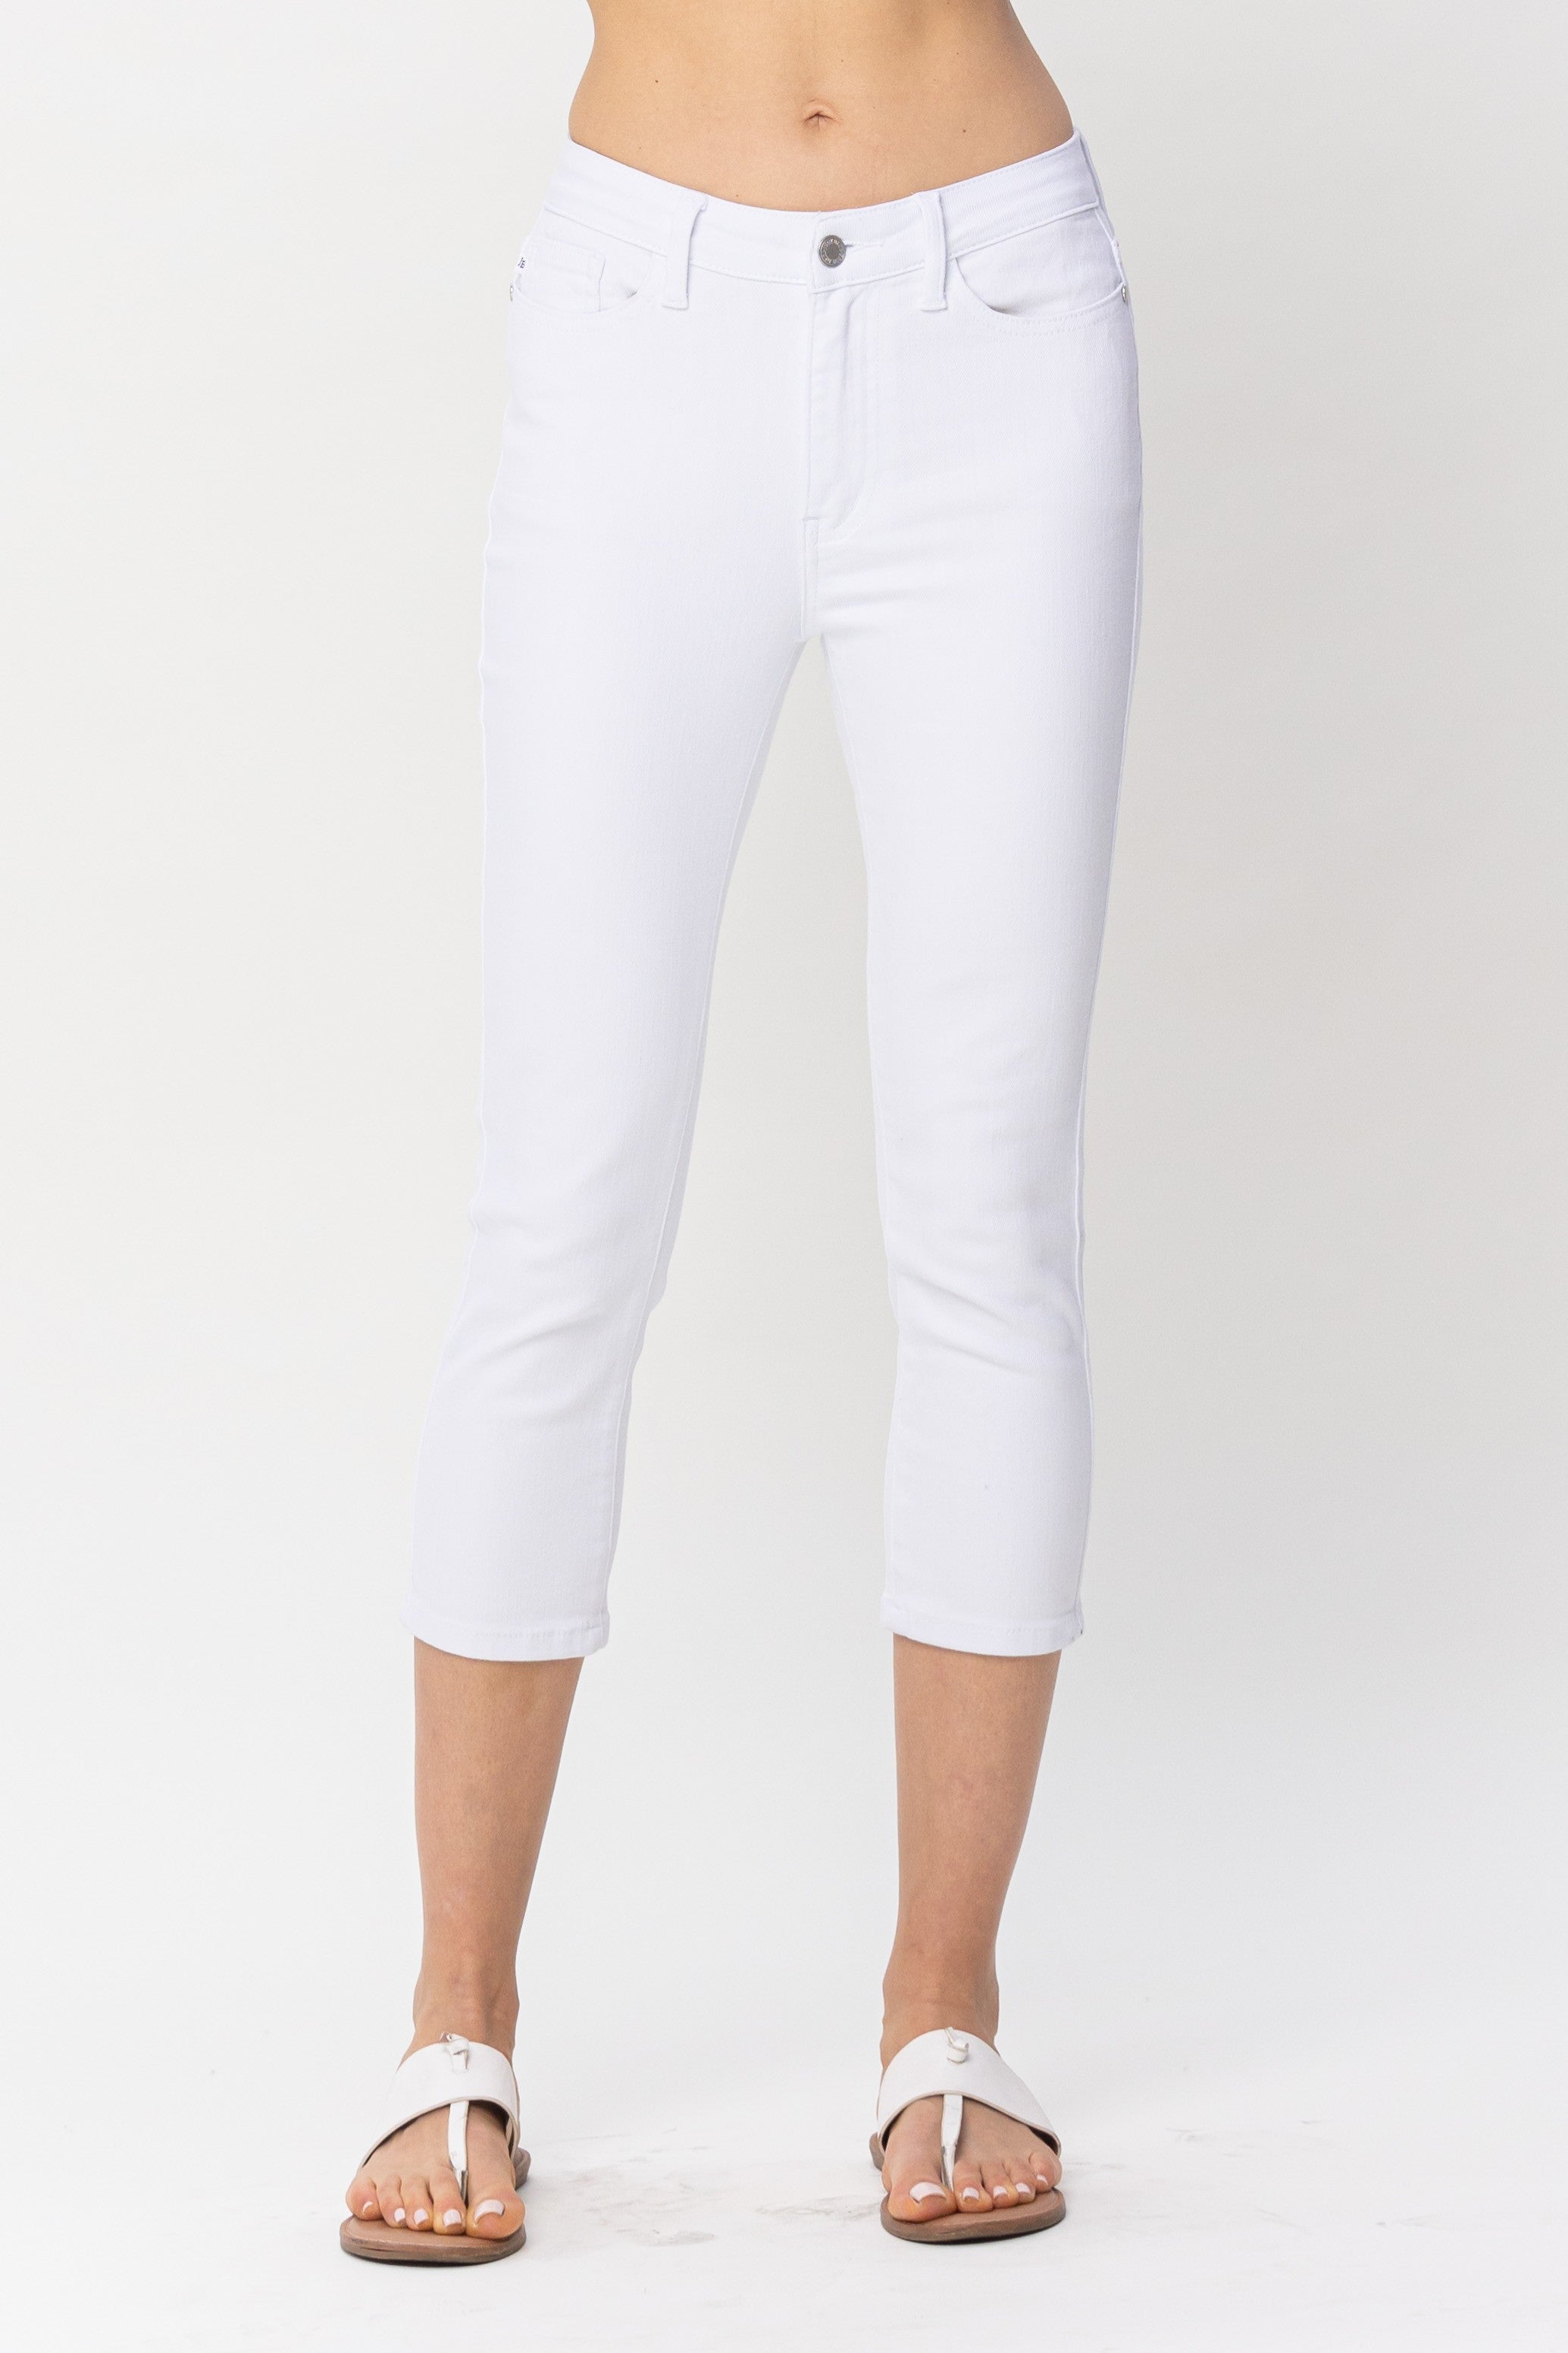 Willa Mid-Rise White Capri Judy Blue Jeans